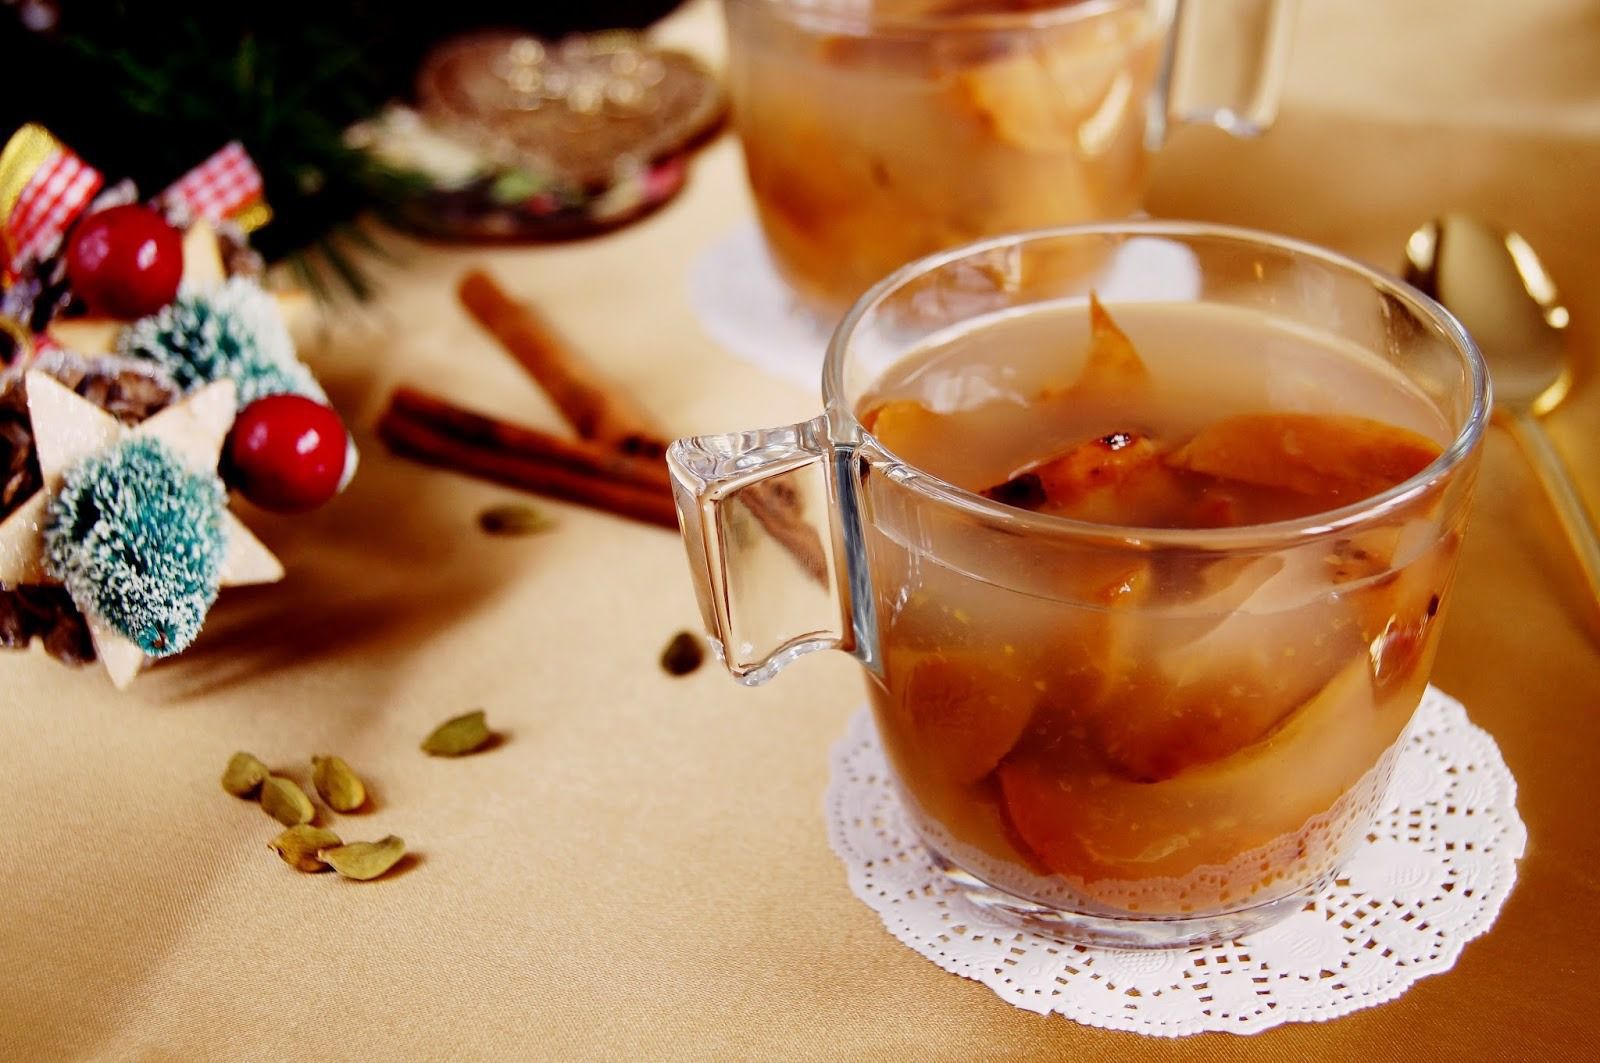 Різдвяний узвар: п'ять рецептів смачного напою. Узвар - традиційний напій різдвяного столу.